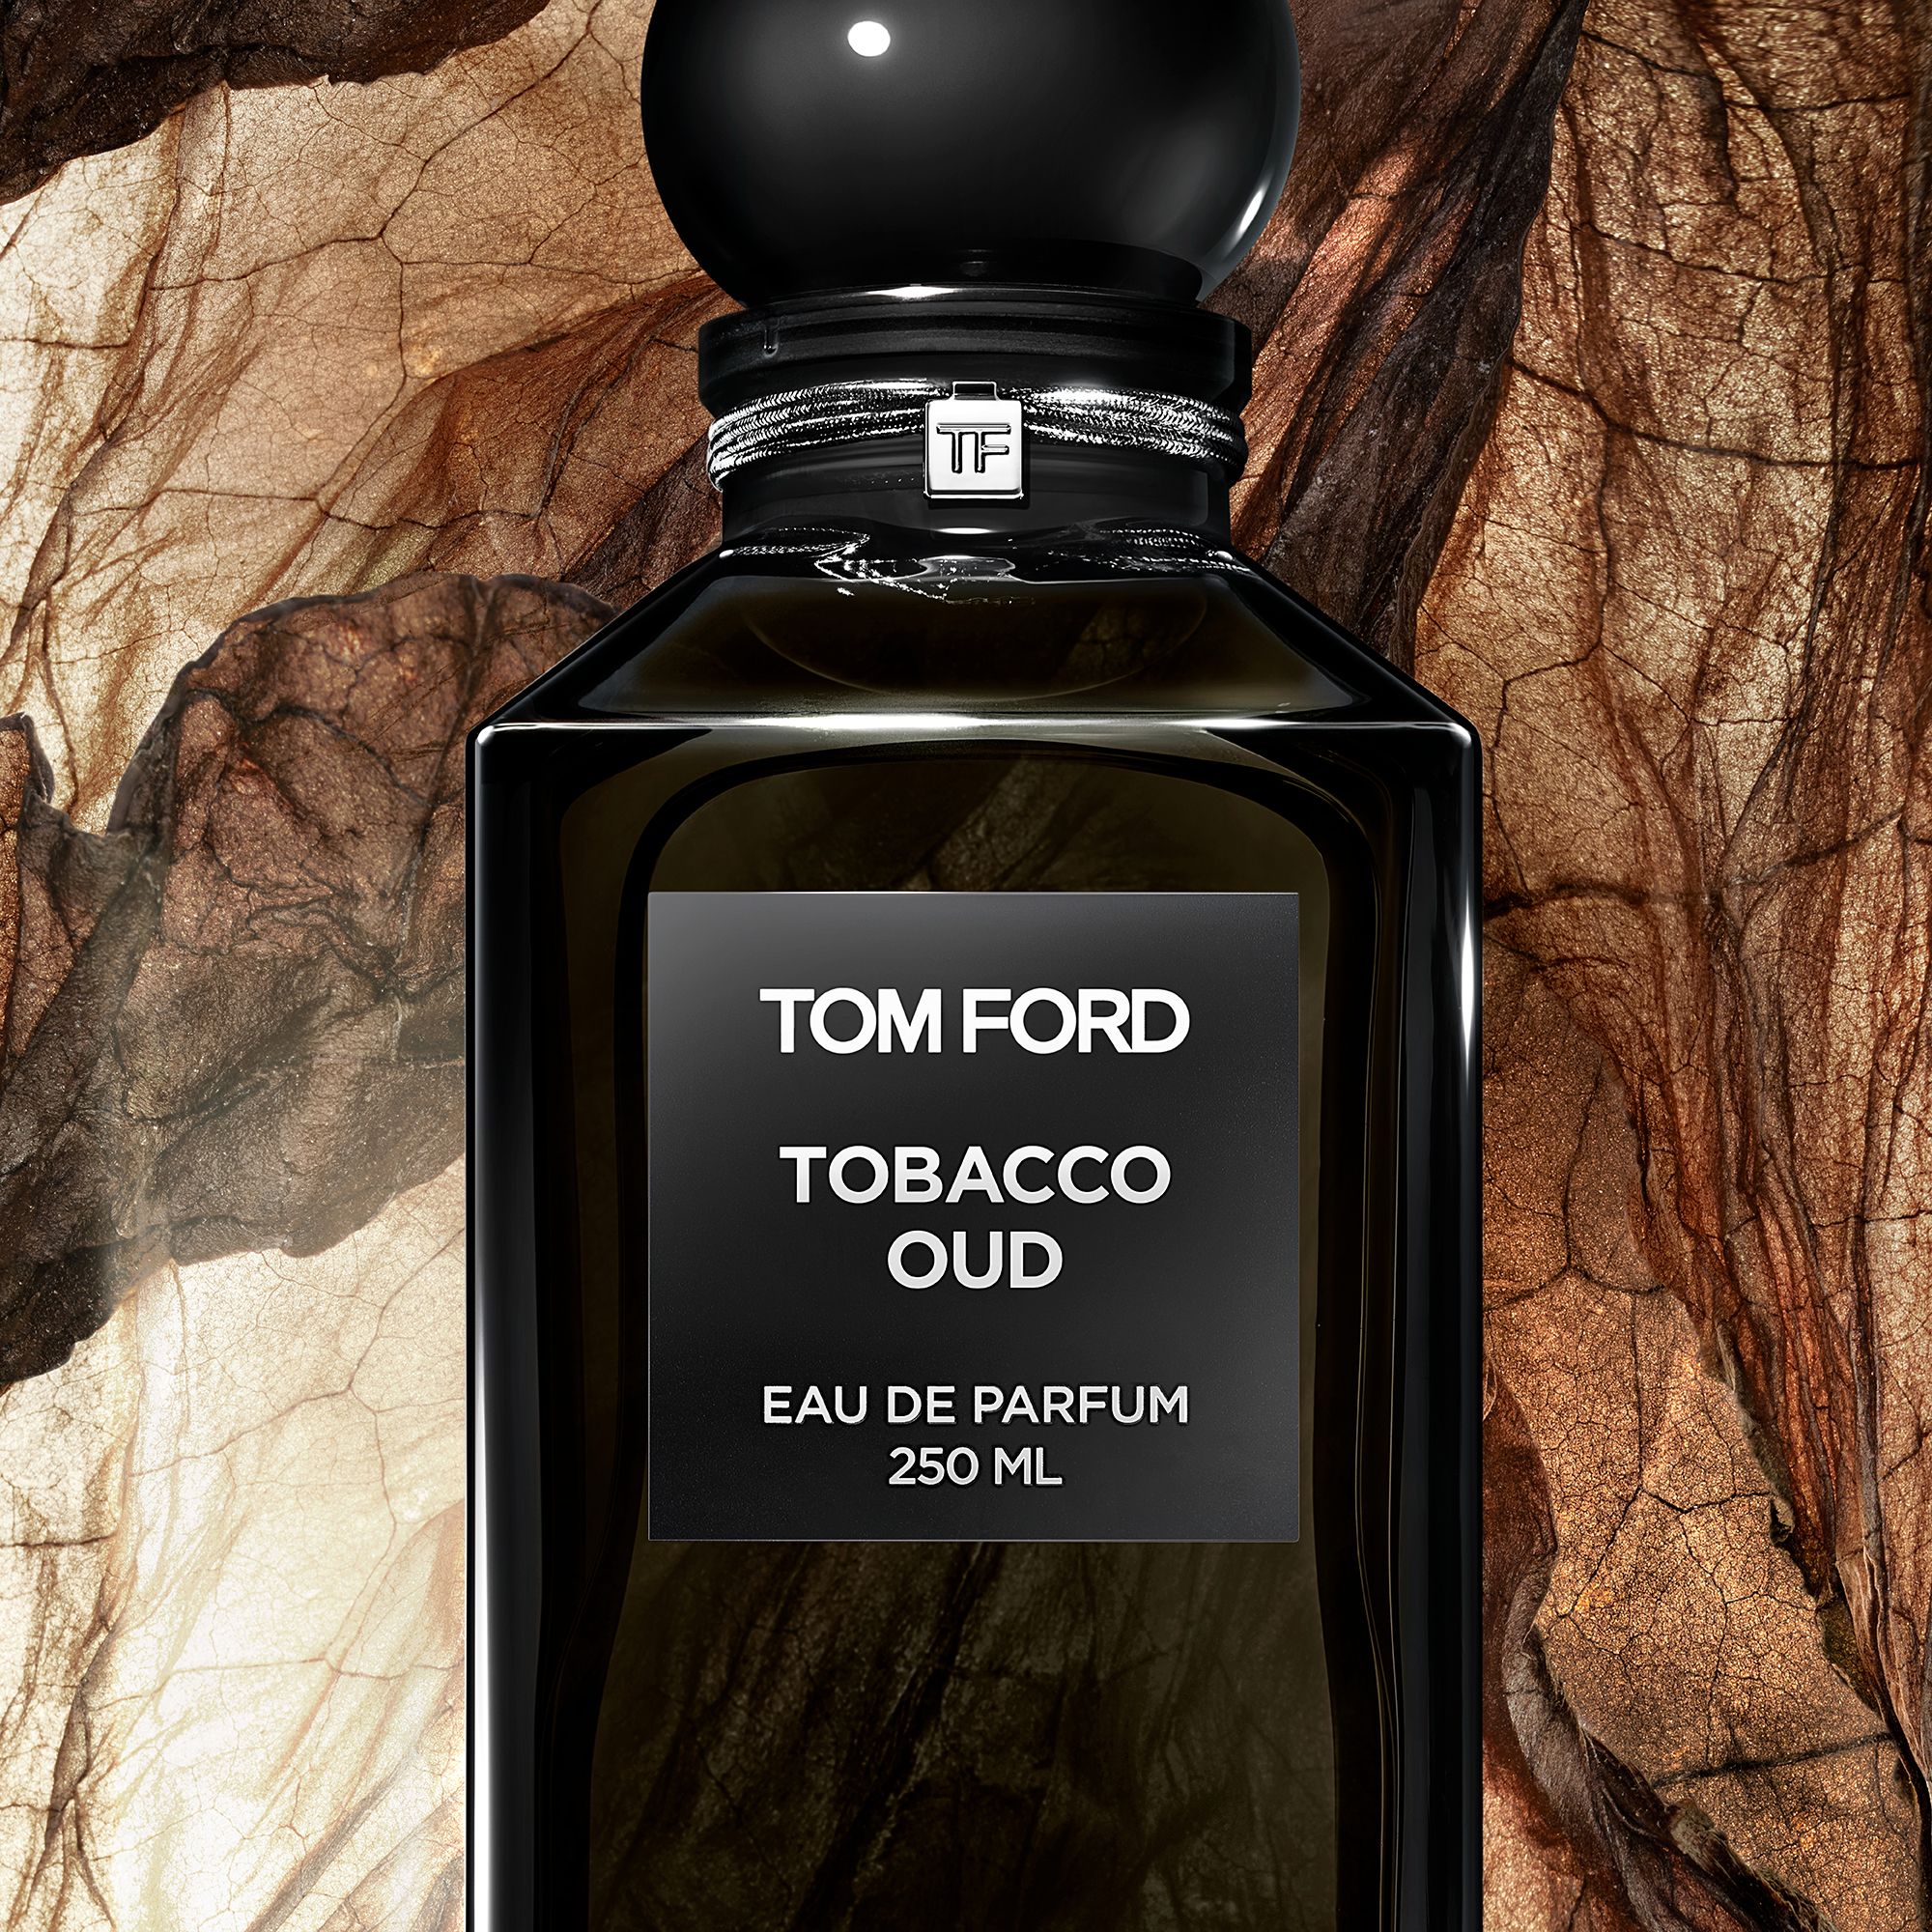 TOM FORD Private Blend Tobacco Oud Eau De Parfum, 50ml at John Lewis ...